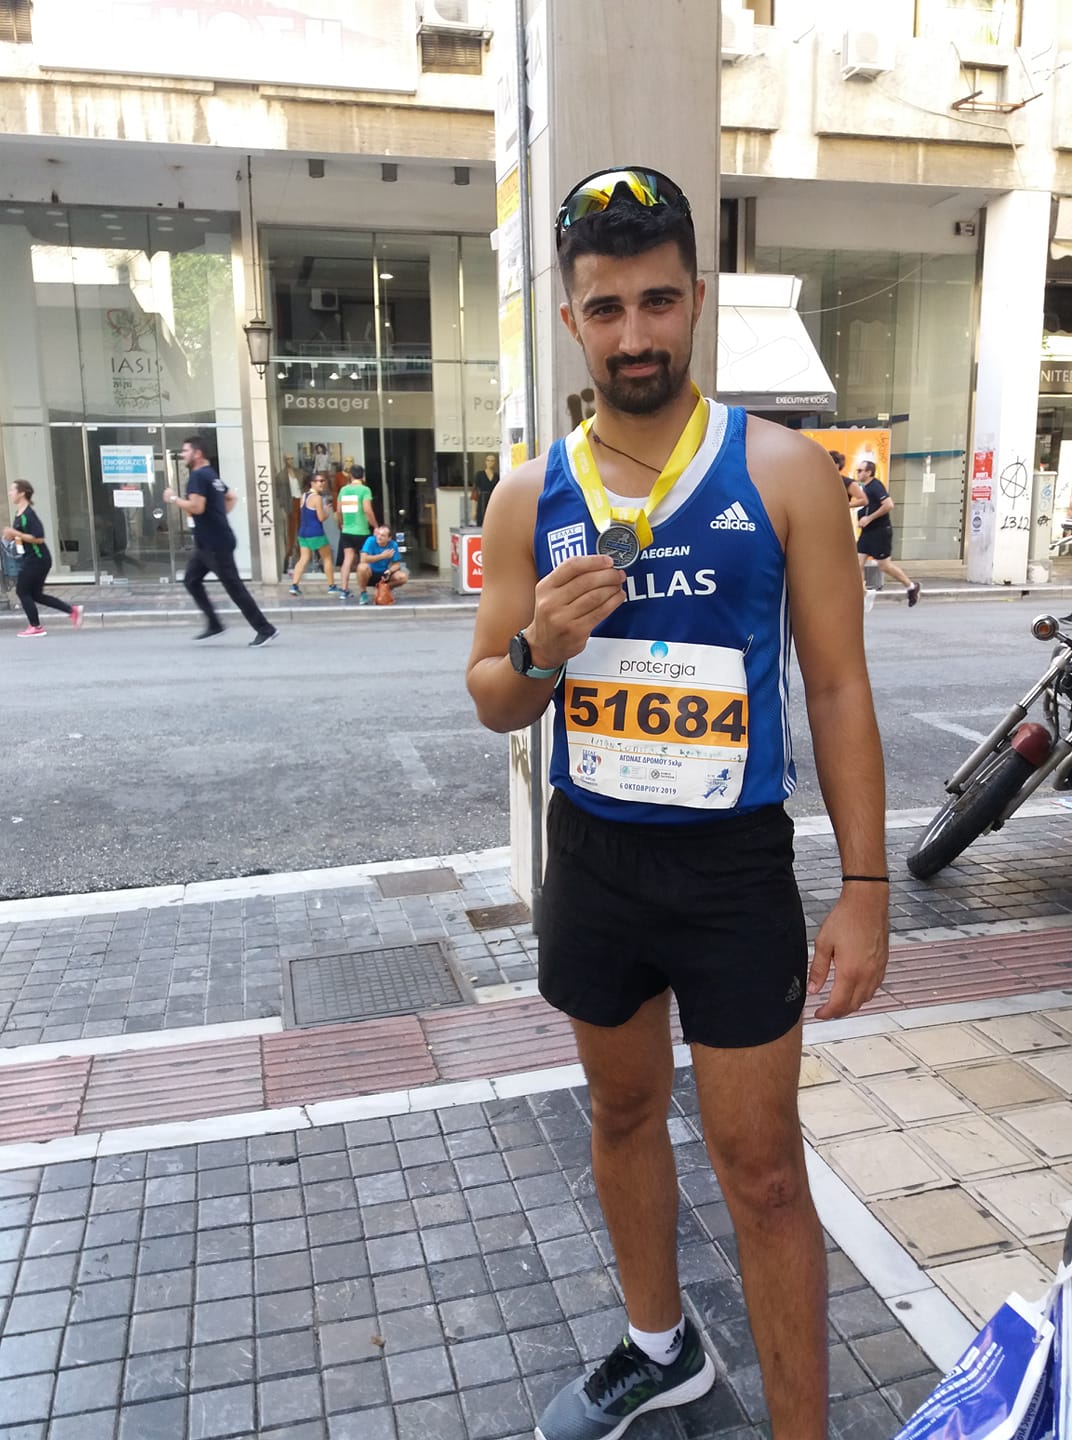 Αλέξανδρος - Κωνσταντίνος Ντεντόπουλος: Δεν θα αγωνιστεί για πρώτη φορά στο πανελλήνιο πρωτάθλημα Βάδην 20 χιλιομέτρων λόγω τραυματισμού 